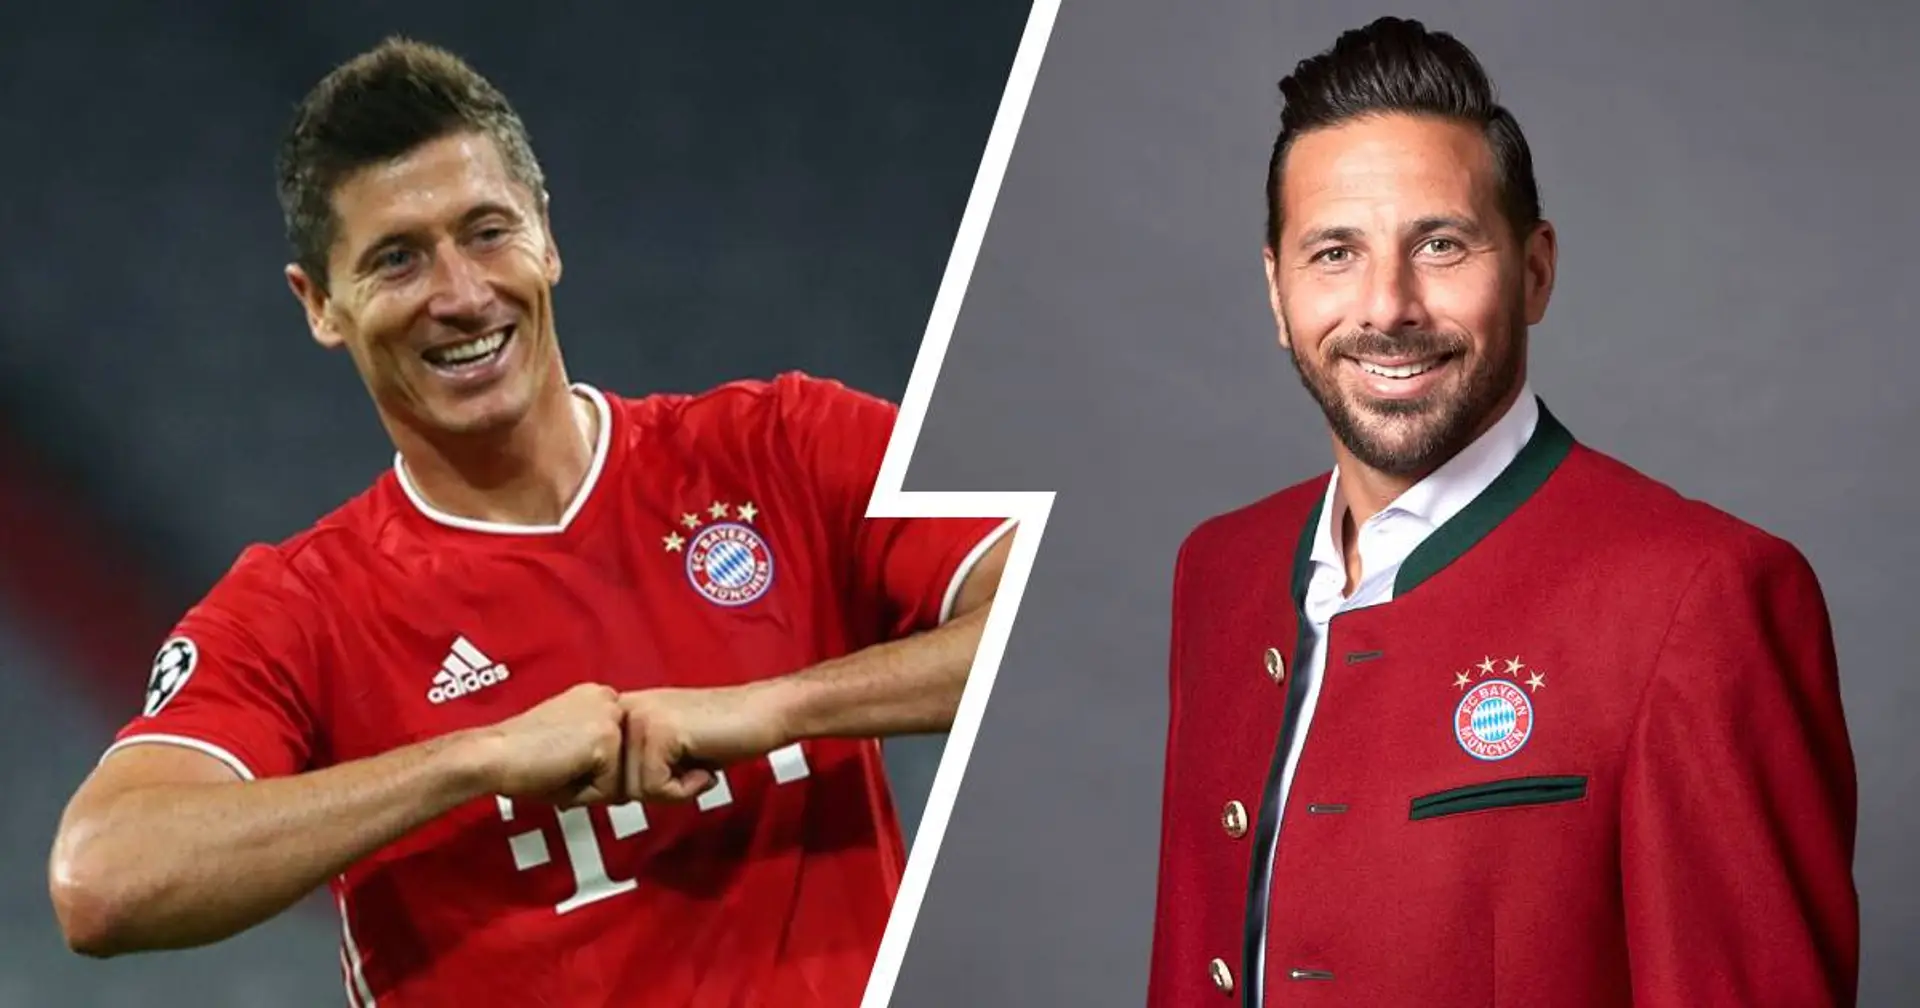 Pizarro über seine gemeinsame Bayern-Saison mit Lewandowski: "Wir haben beide voneinander profitiert"